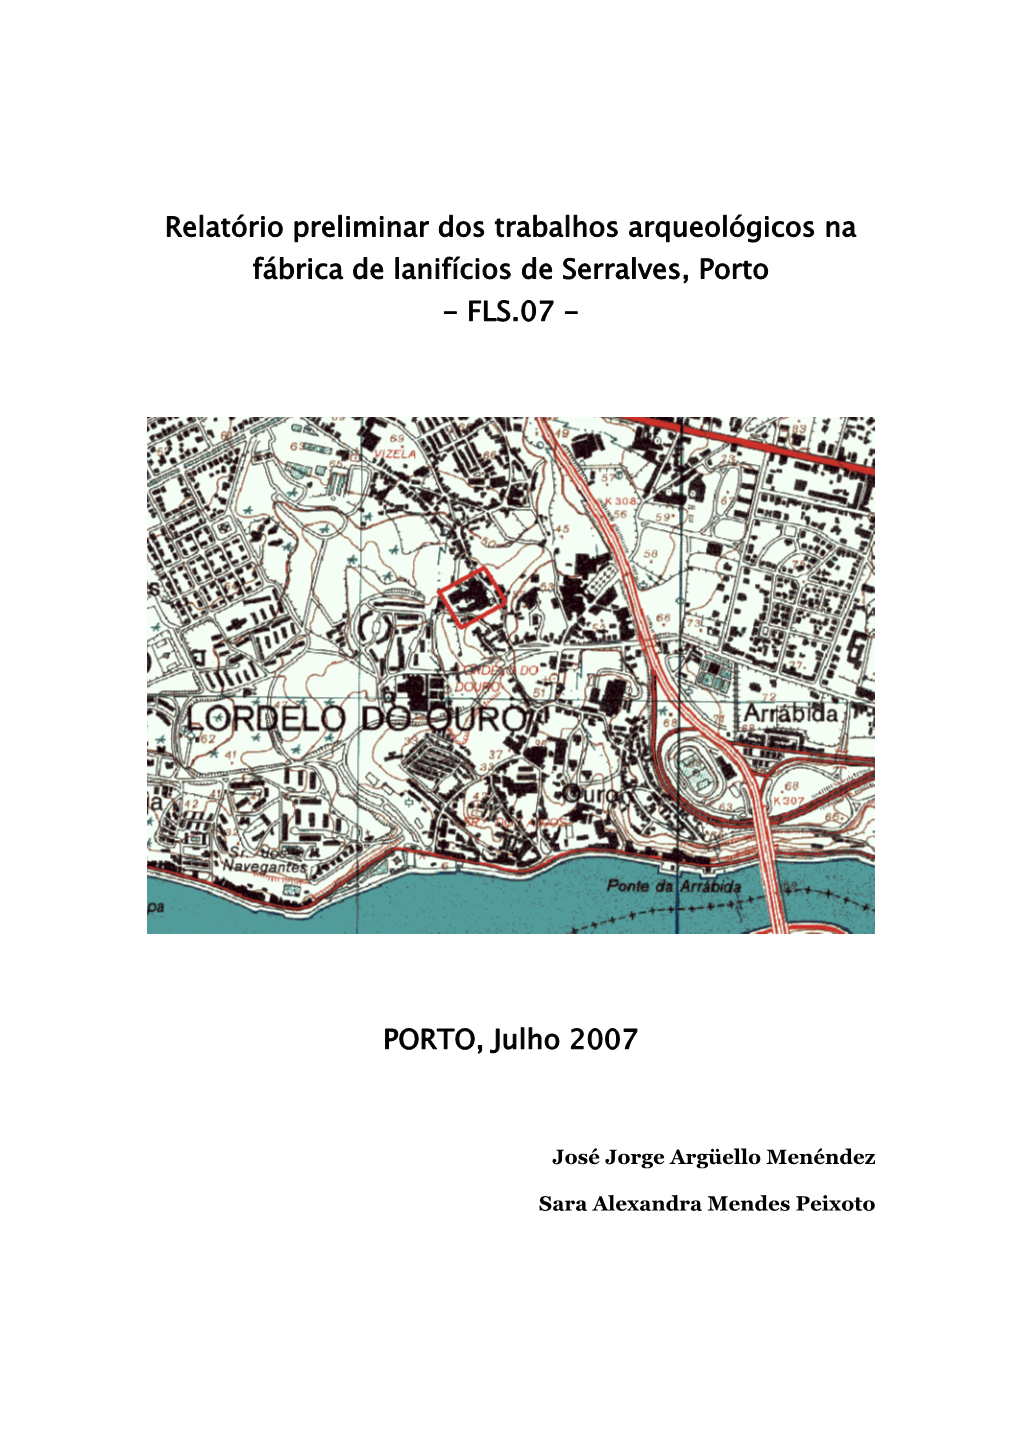 Relatório Preliminar Dos Trabalhos Arqueológicos Na Fábrica De Lanifícios De Serralves, Porto - FLS.07